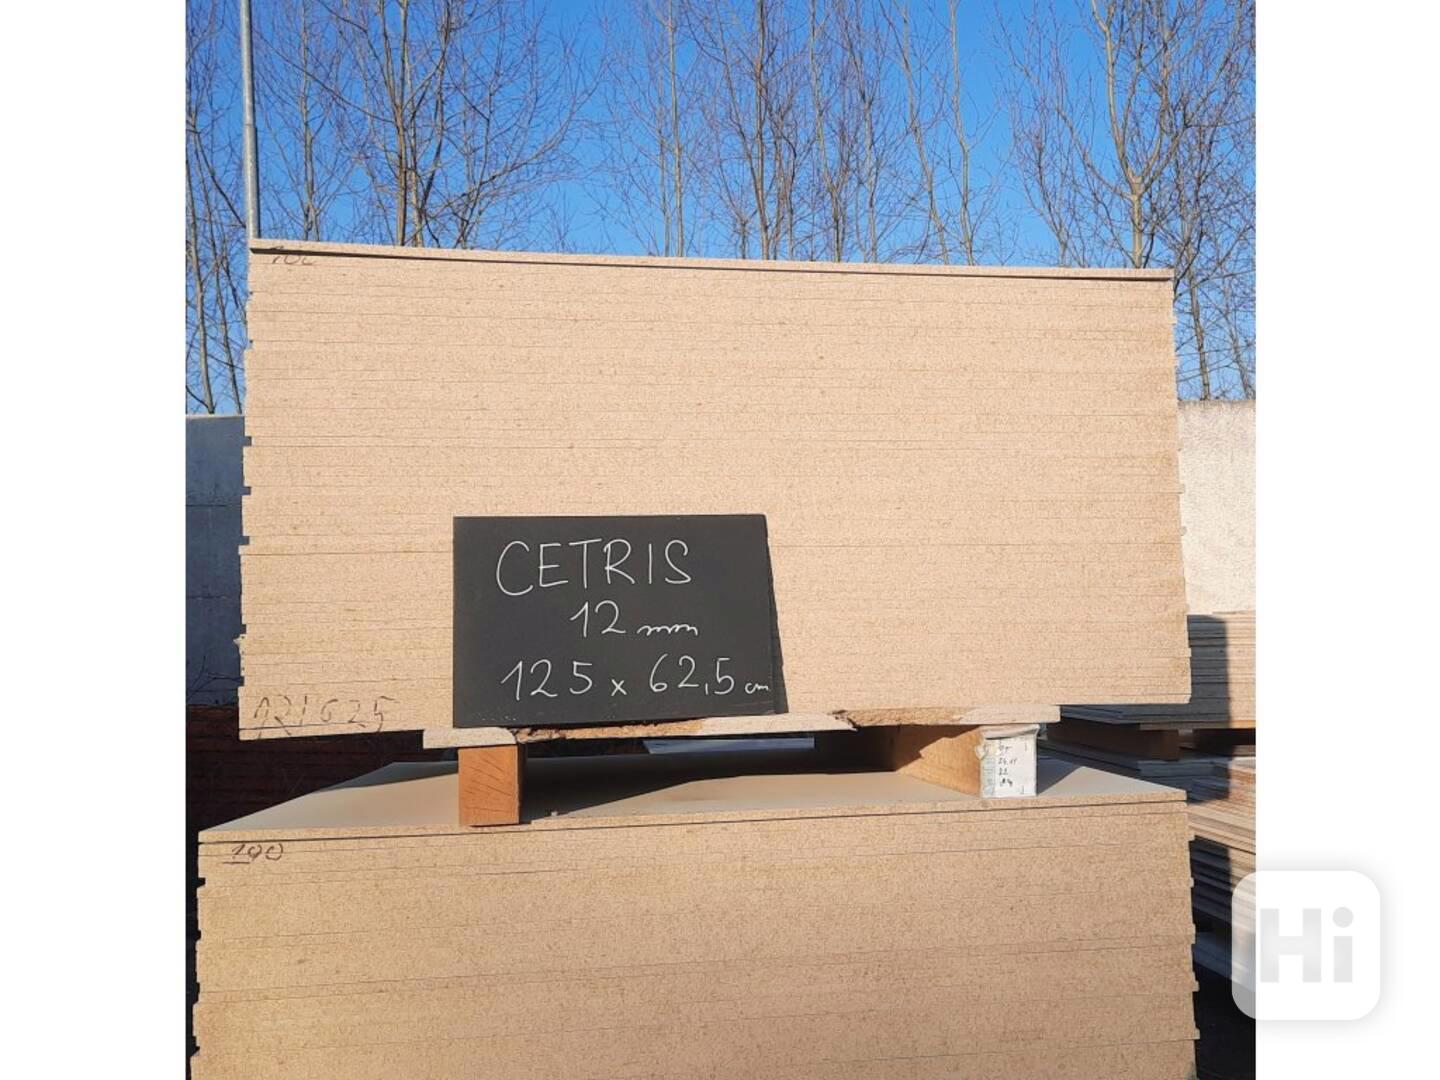 CETRIS® 12mm - 1250x625 mm - foto 1